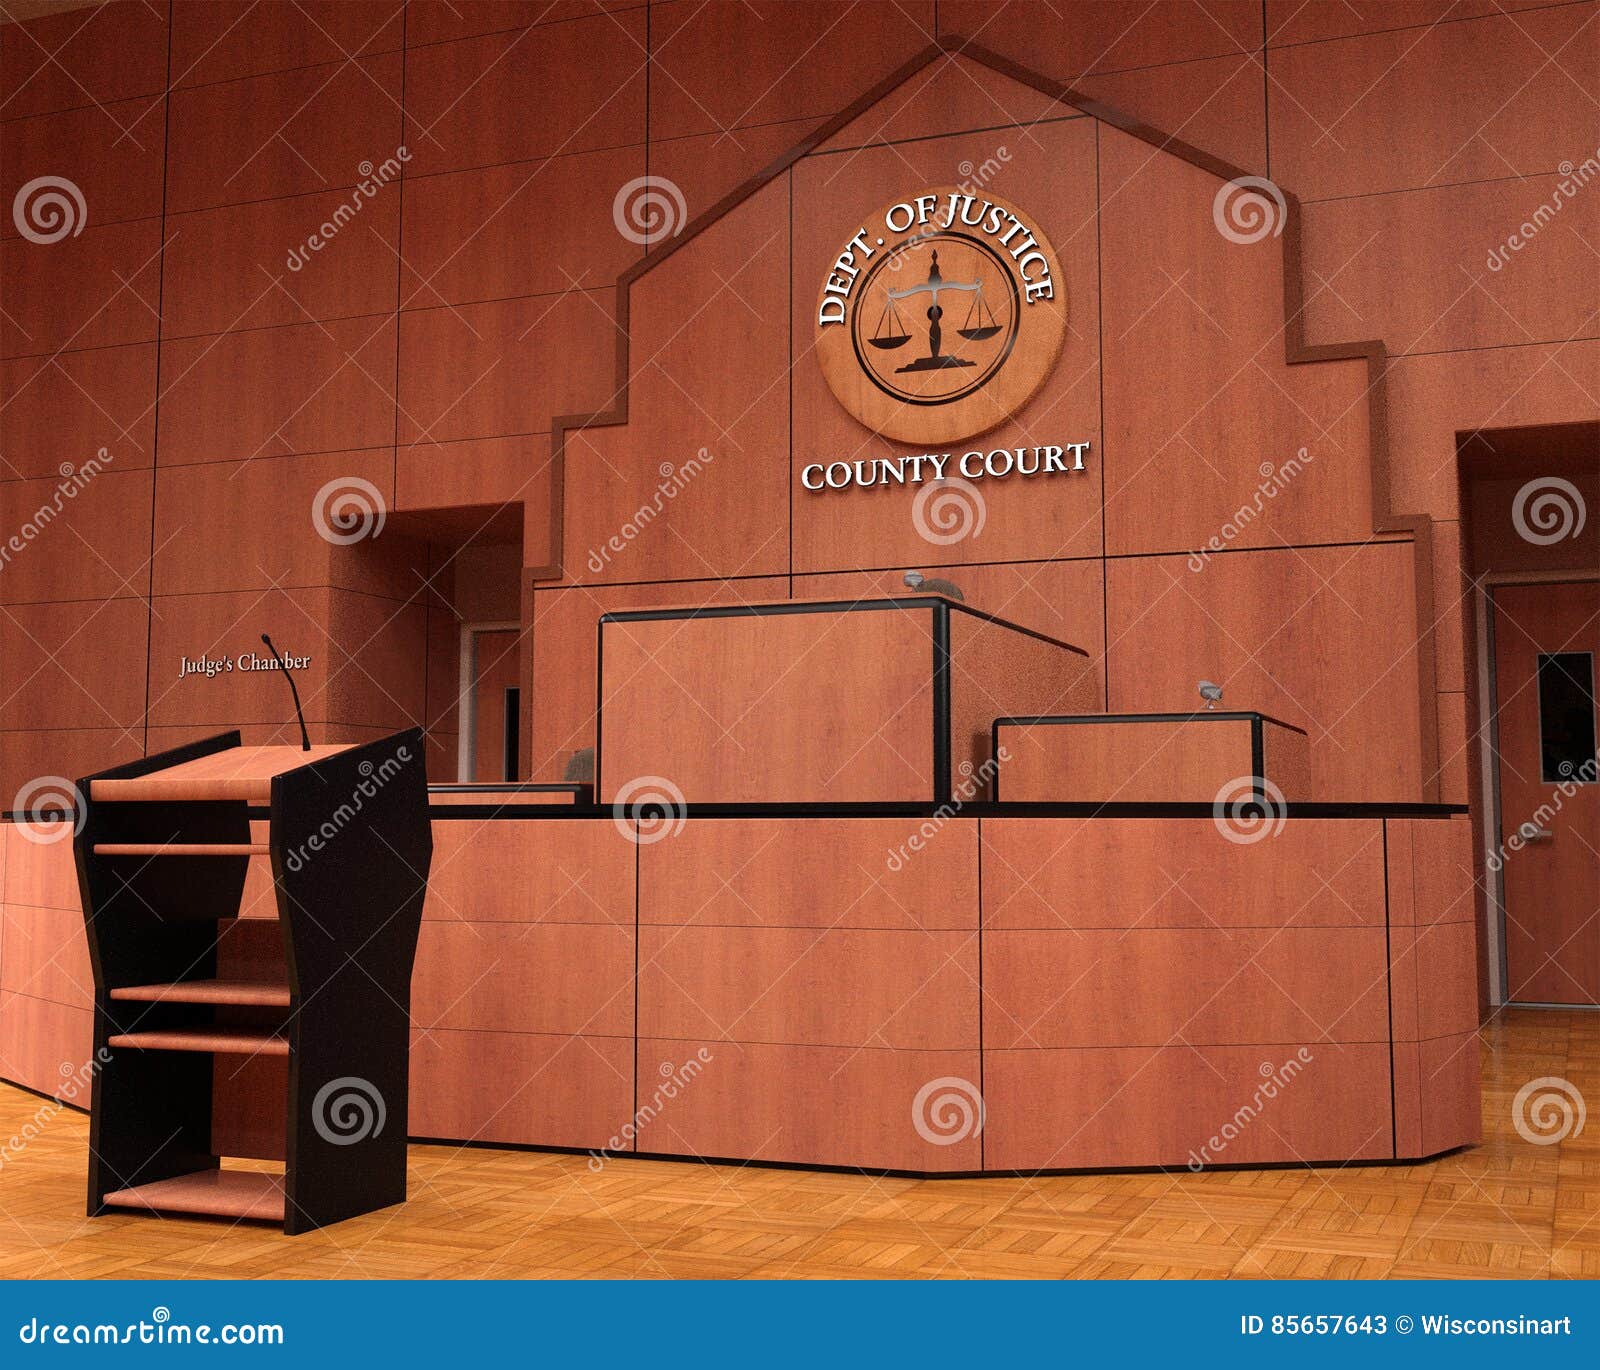 courtroom, law, lawsuit, litigation, judgement